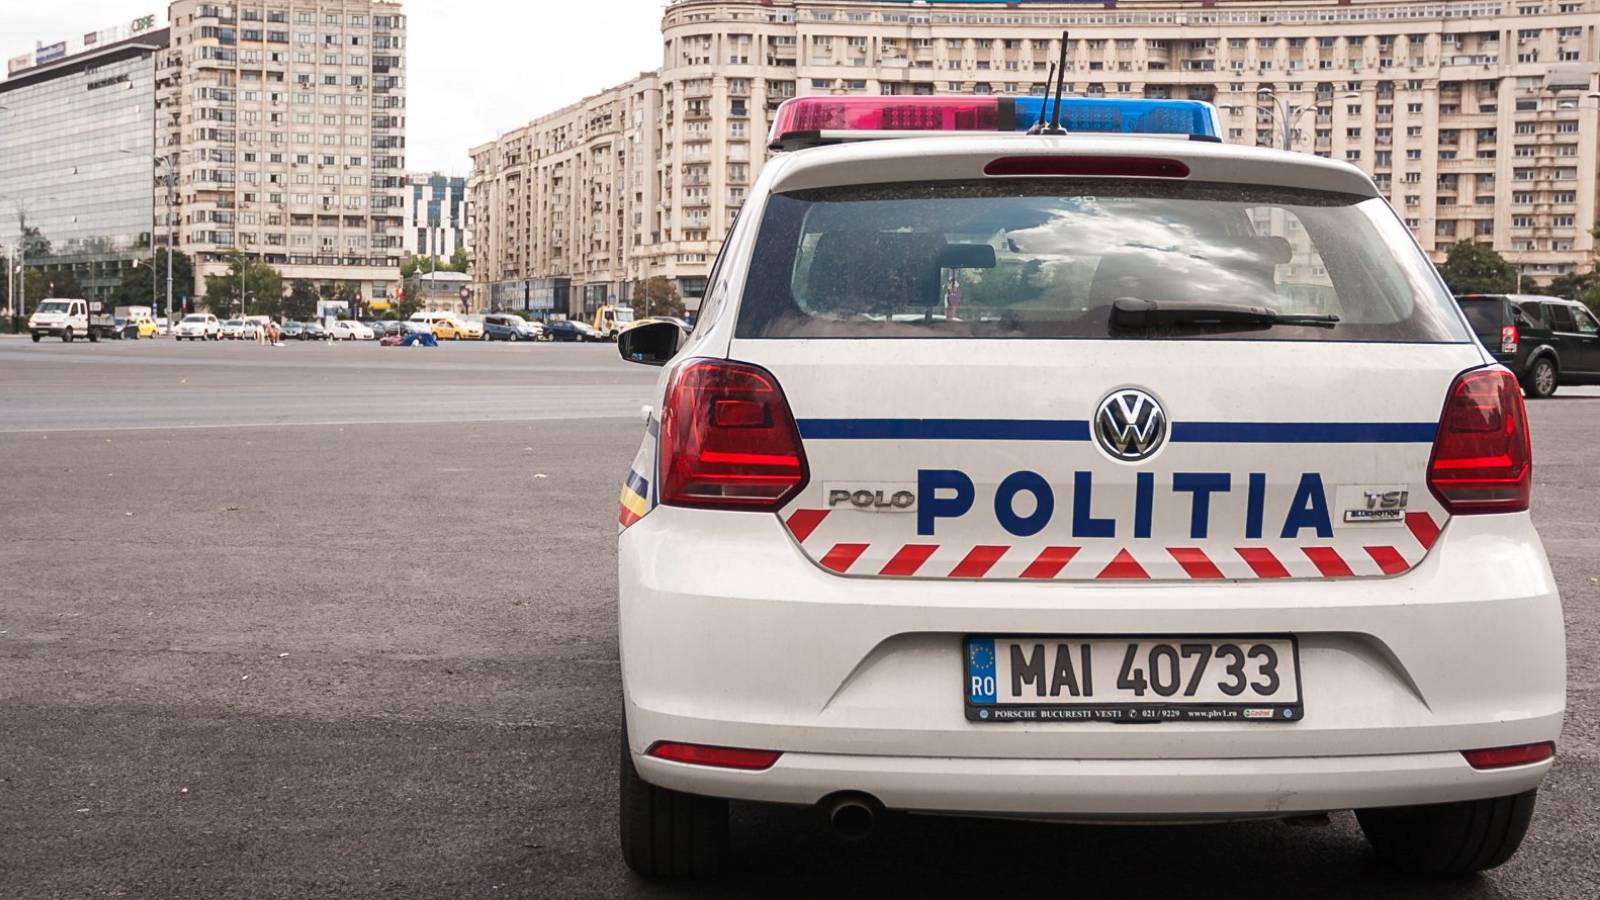 Det rumænske politis opmærksomhed for rumænere over hele landet